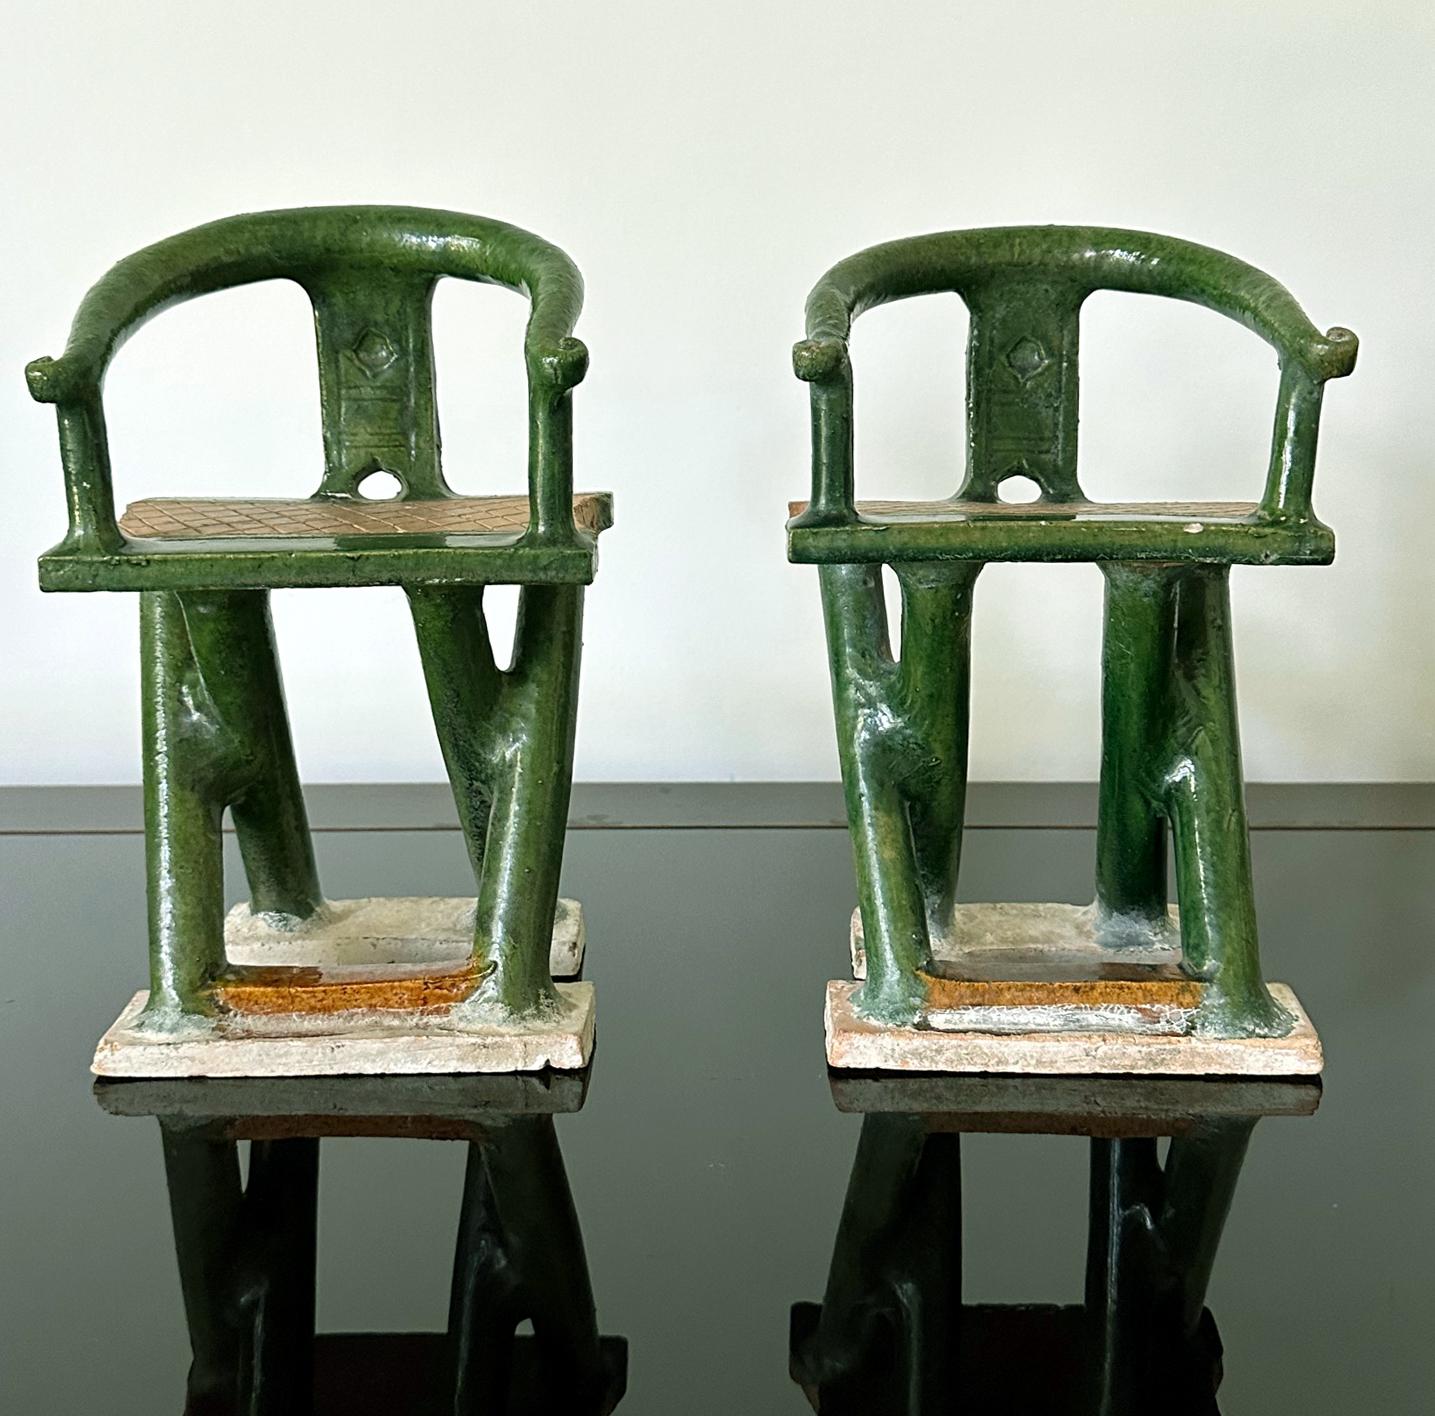 Paire de chaises en fer à cheval en grès chinois de la dynastie Ming (XVe-XVIIe siècle). Les modèles miniatures étaient traditionnellement fabriqués comme objets d'offrande funéraire. Des modèles de poterie représentant des objets de la vie